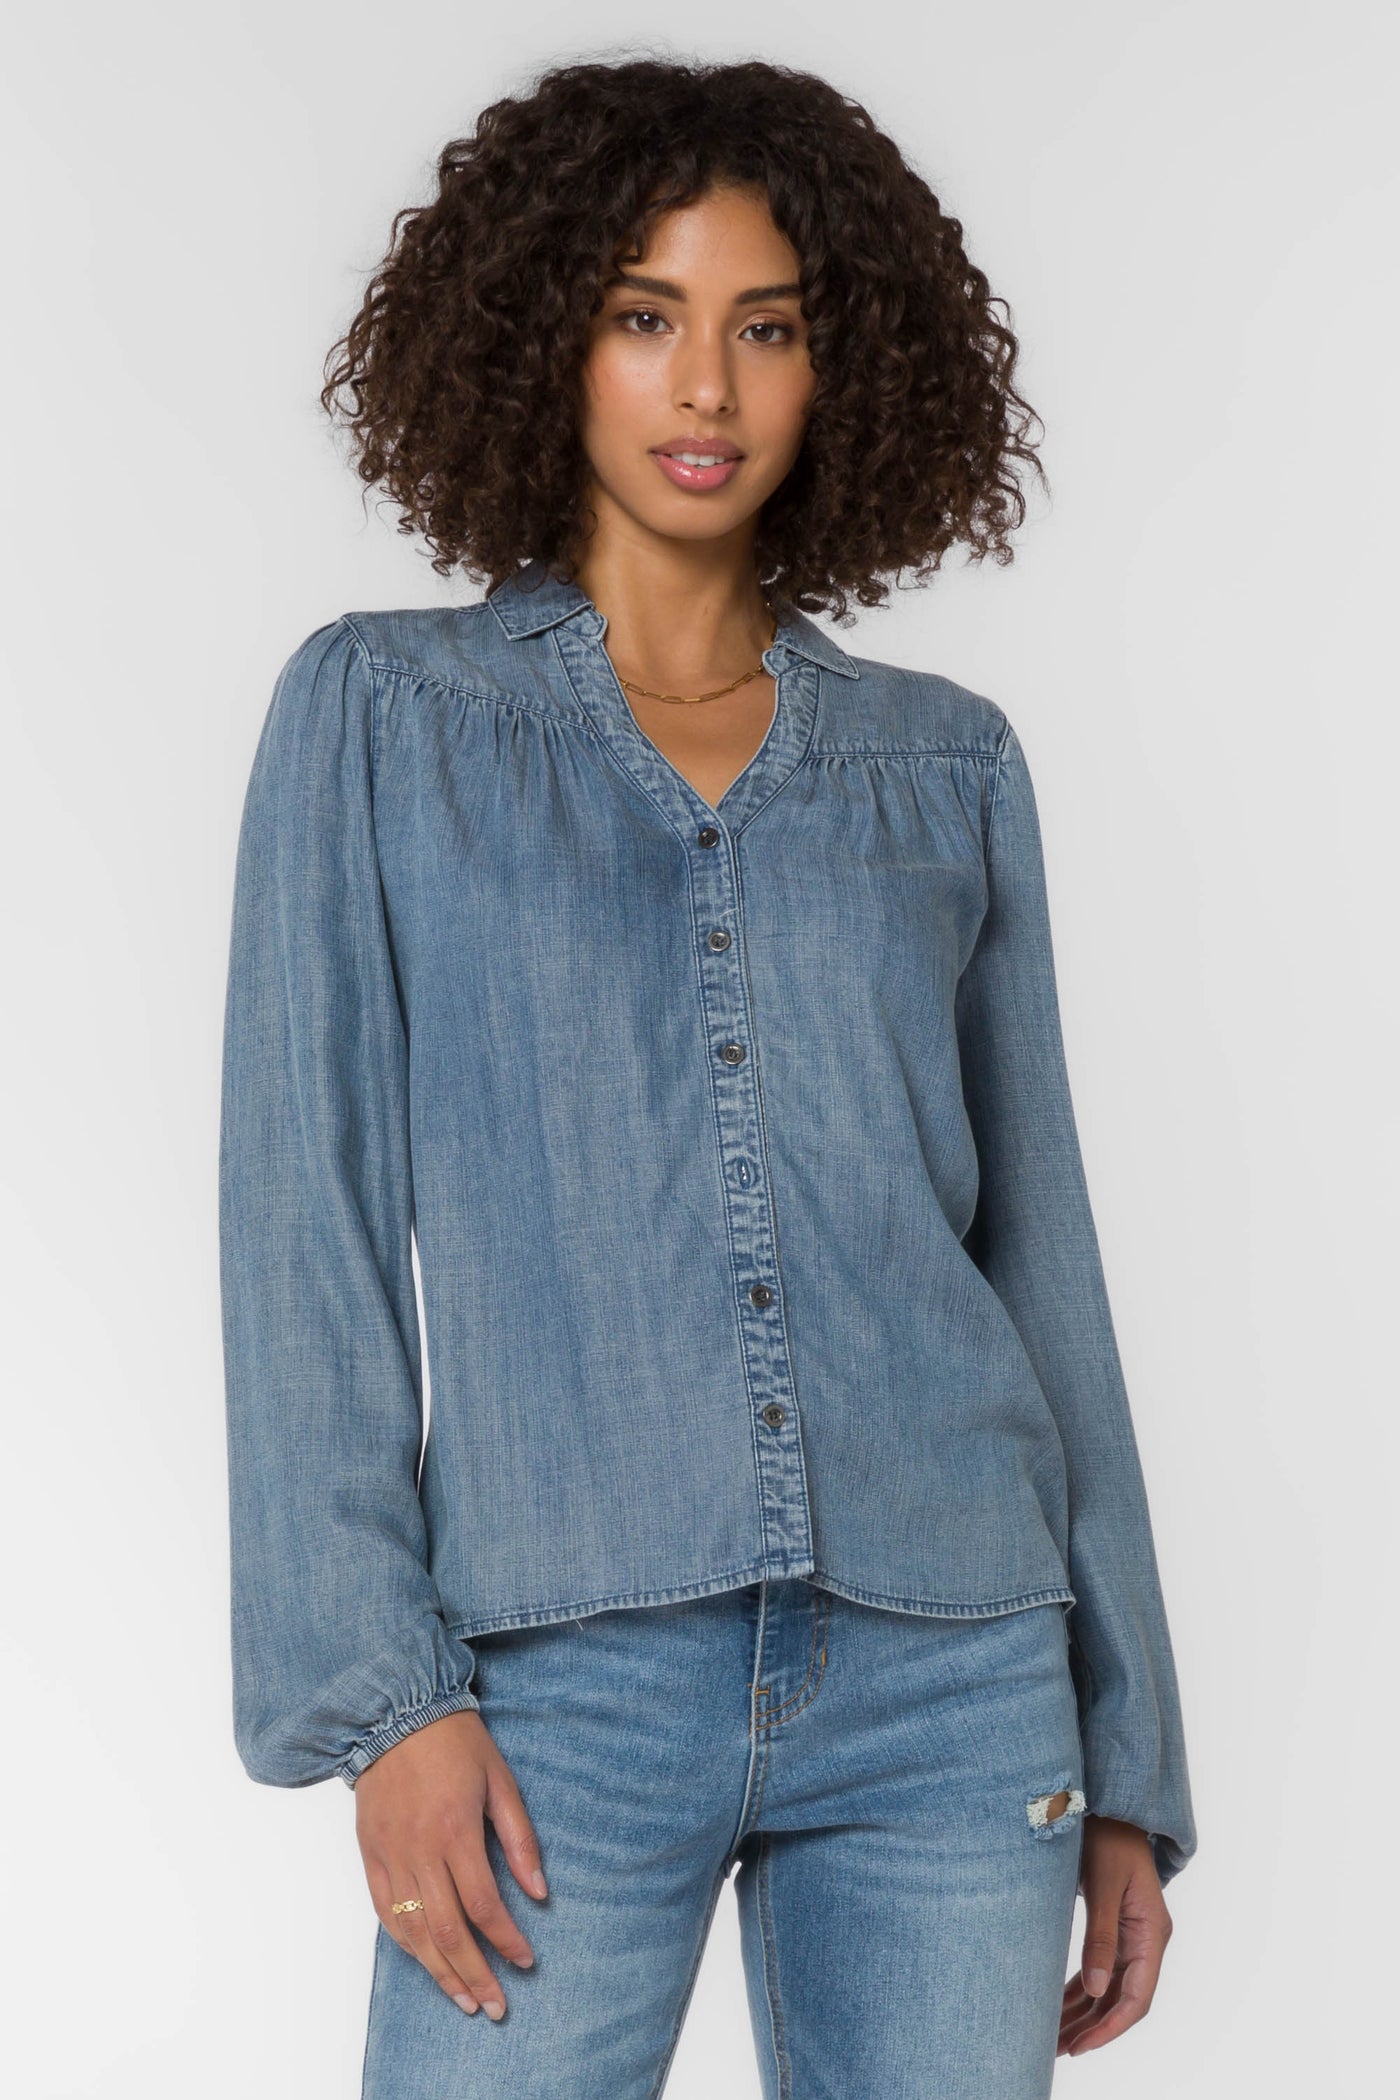 Kendall Blue Denim Shirt - Tops - Velvet Heart Clothing